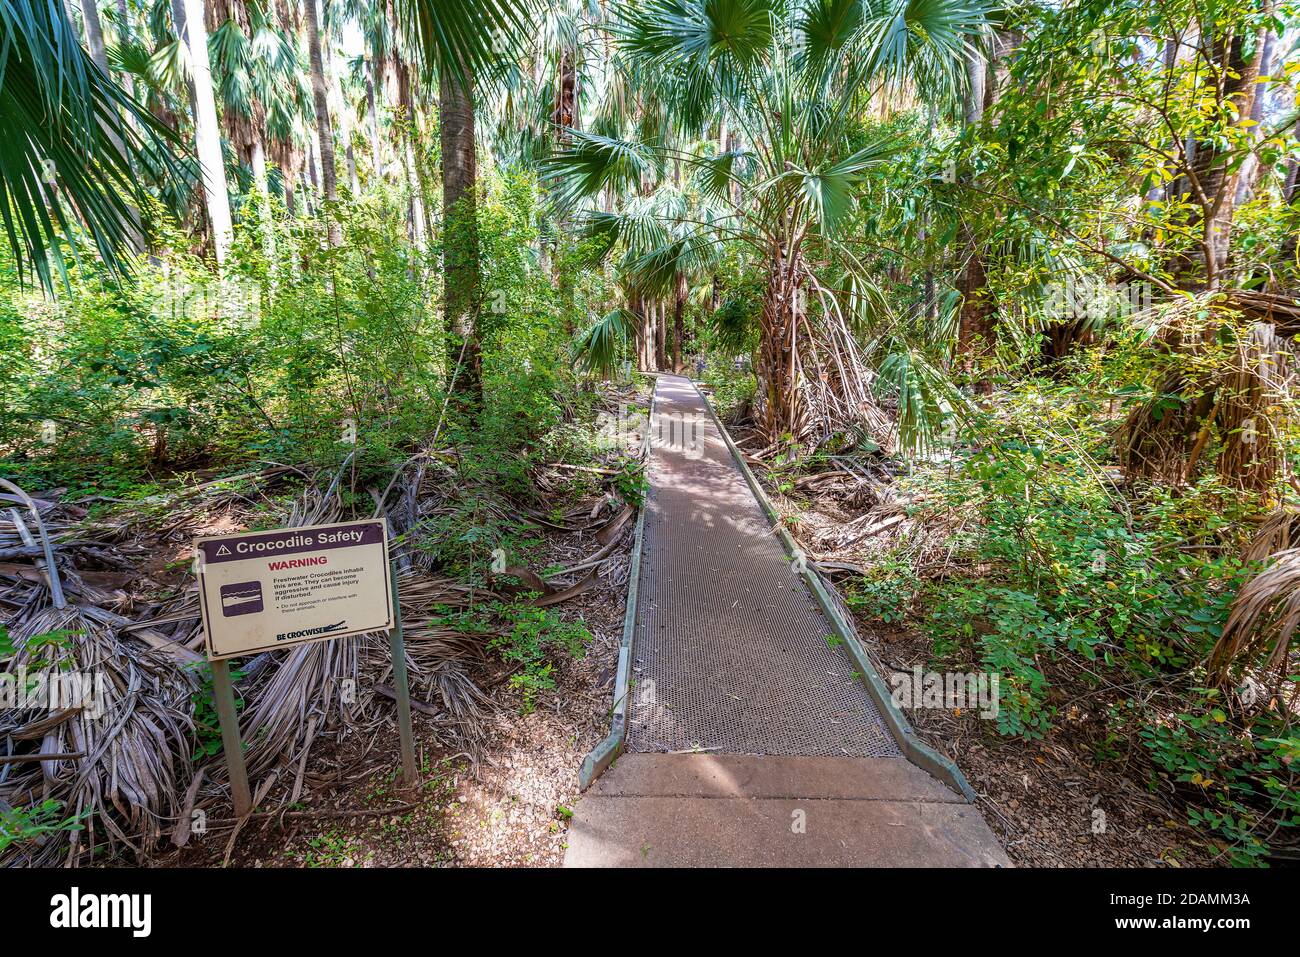 Pericolo coccodrilli, no nuoto - cartello di avvertimento situato nel territorio del Nord, Australia. Foto Stock